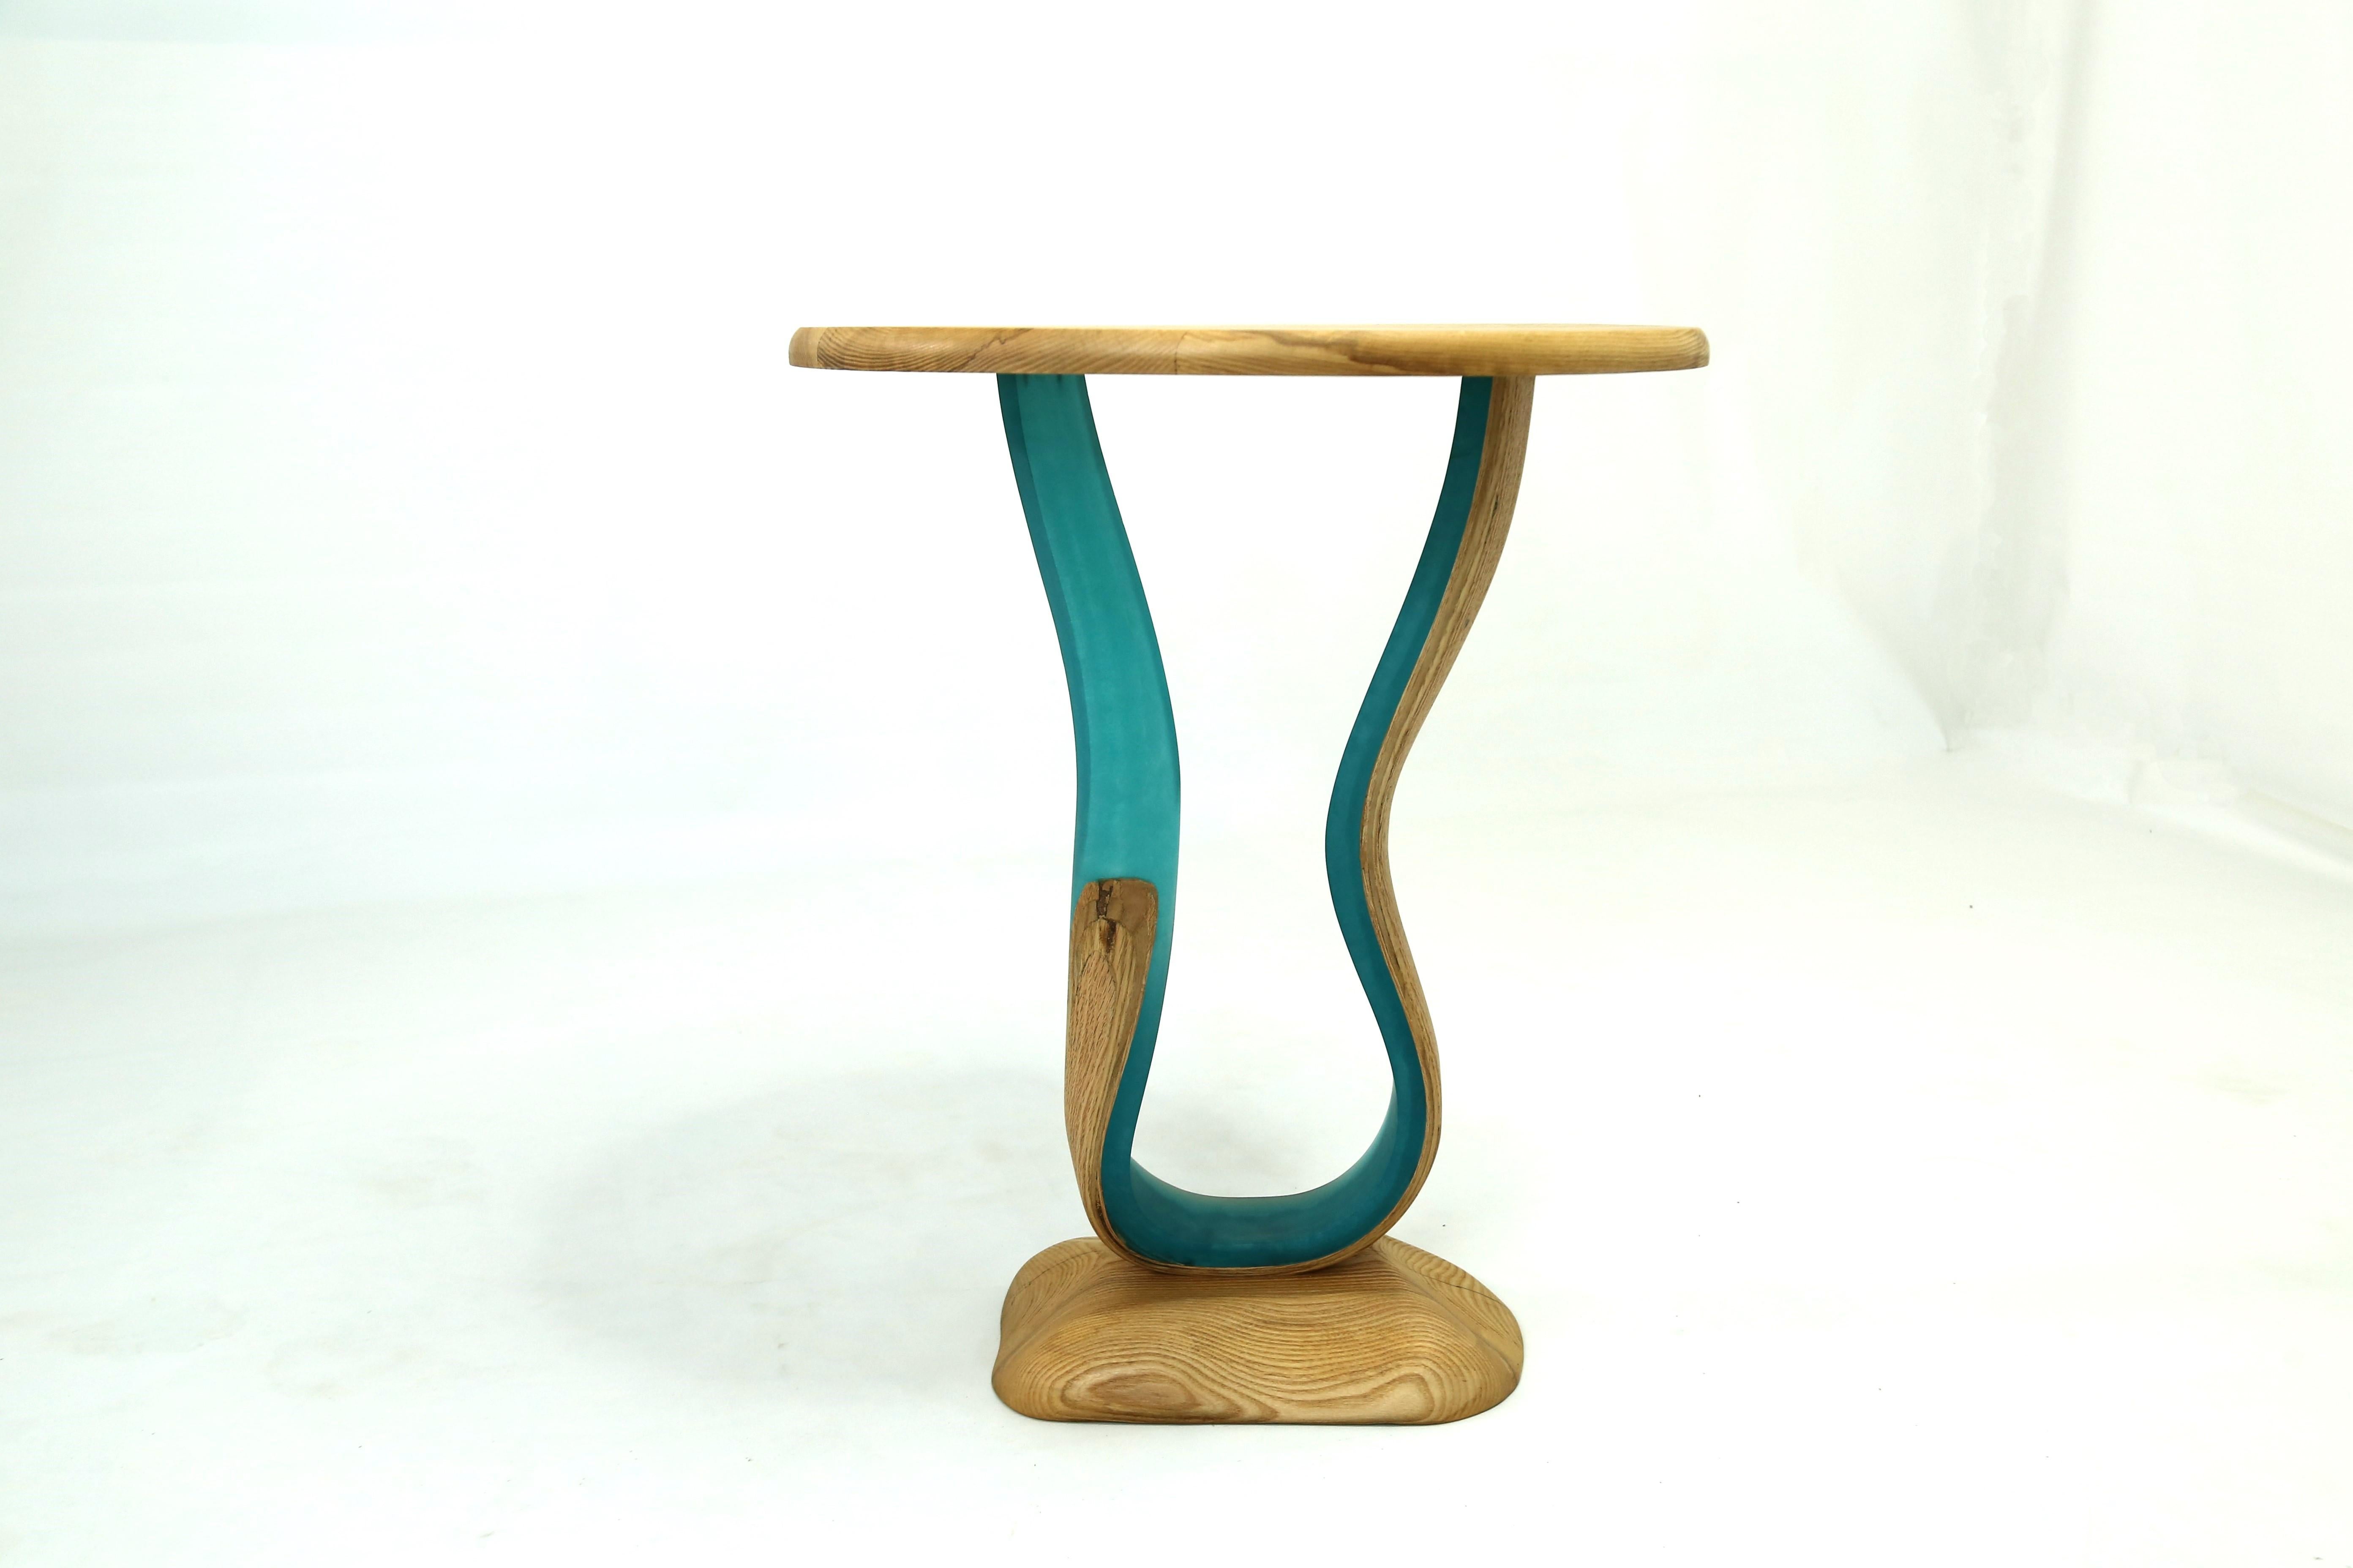 Der Zeta Table ist ein Beistelltisch mit einer runden Eschenholzplatte und einer frei geformten Basis. Der Körper des Stücks besteht aus Harz, das mit Eschenholzstreifen verschmolzen ist, die sich zusammen drehen und wenden und dem Stück seine